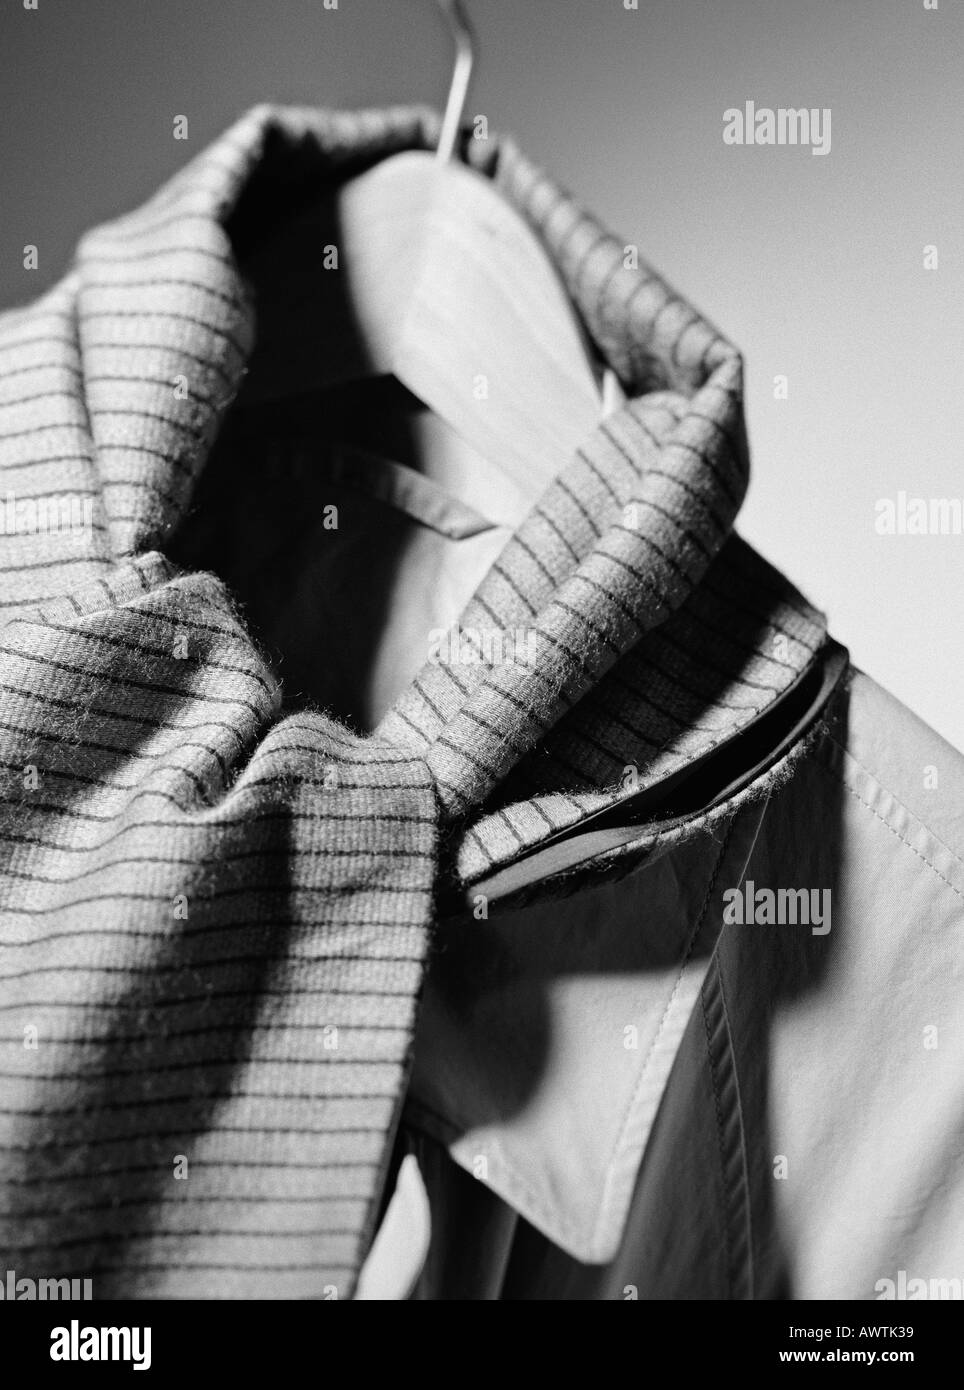 Jacke und Schal auf Kleiderbügel, Nahaufnahme Stockfoto